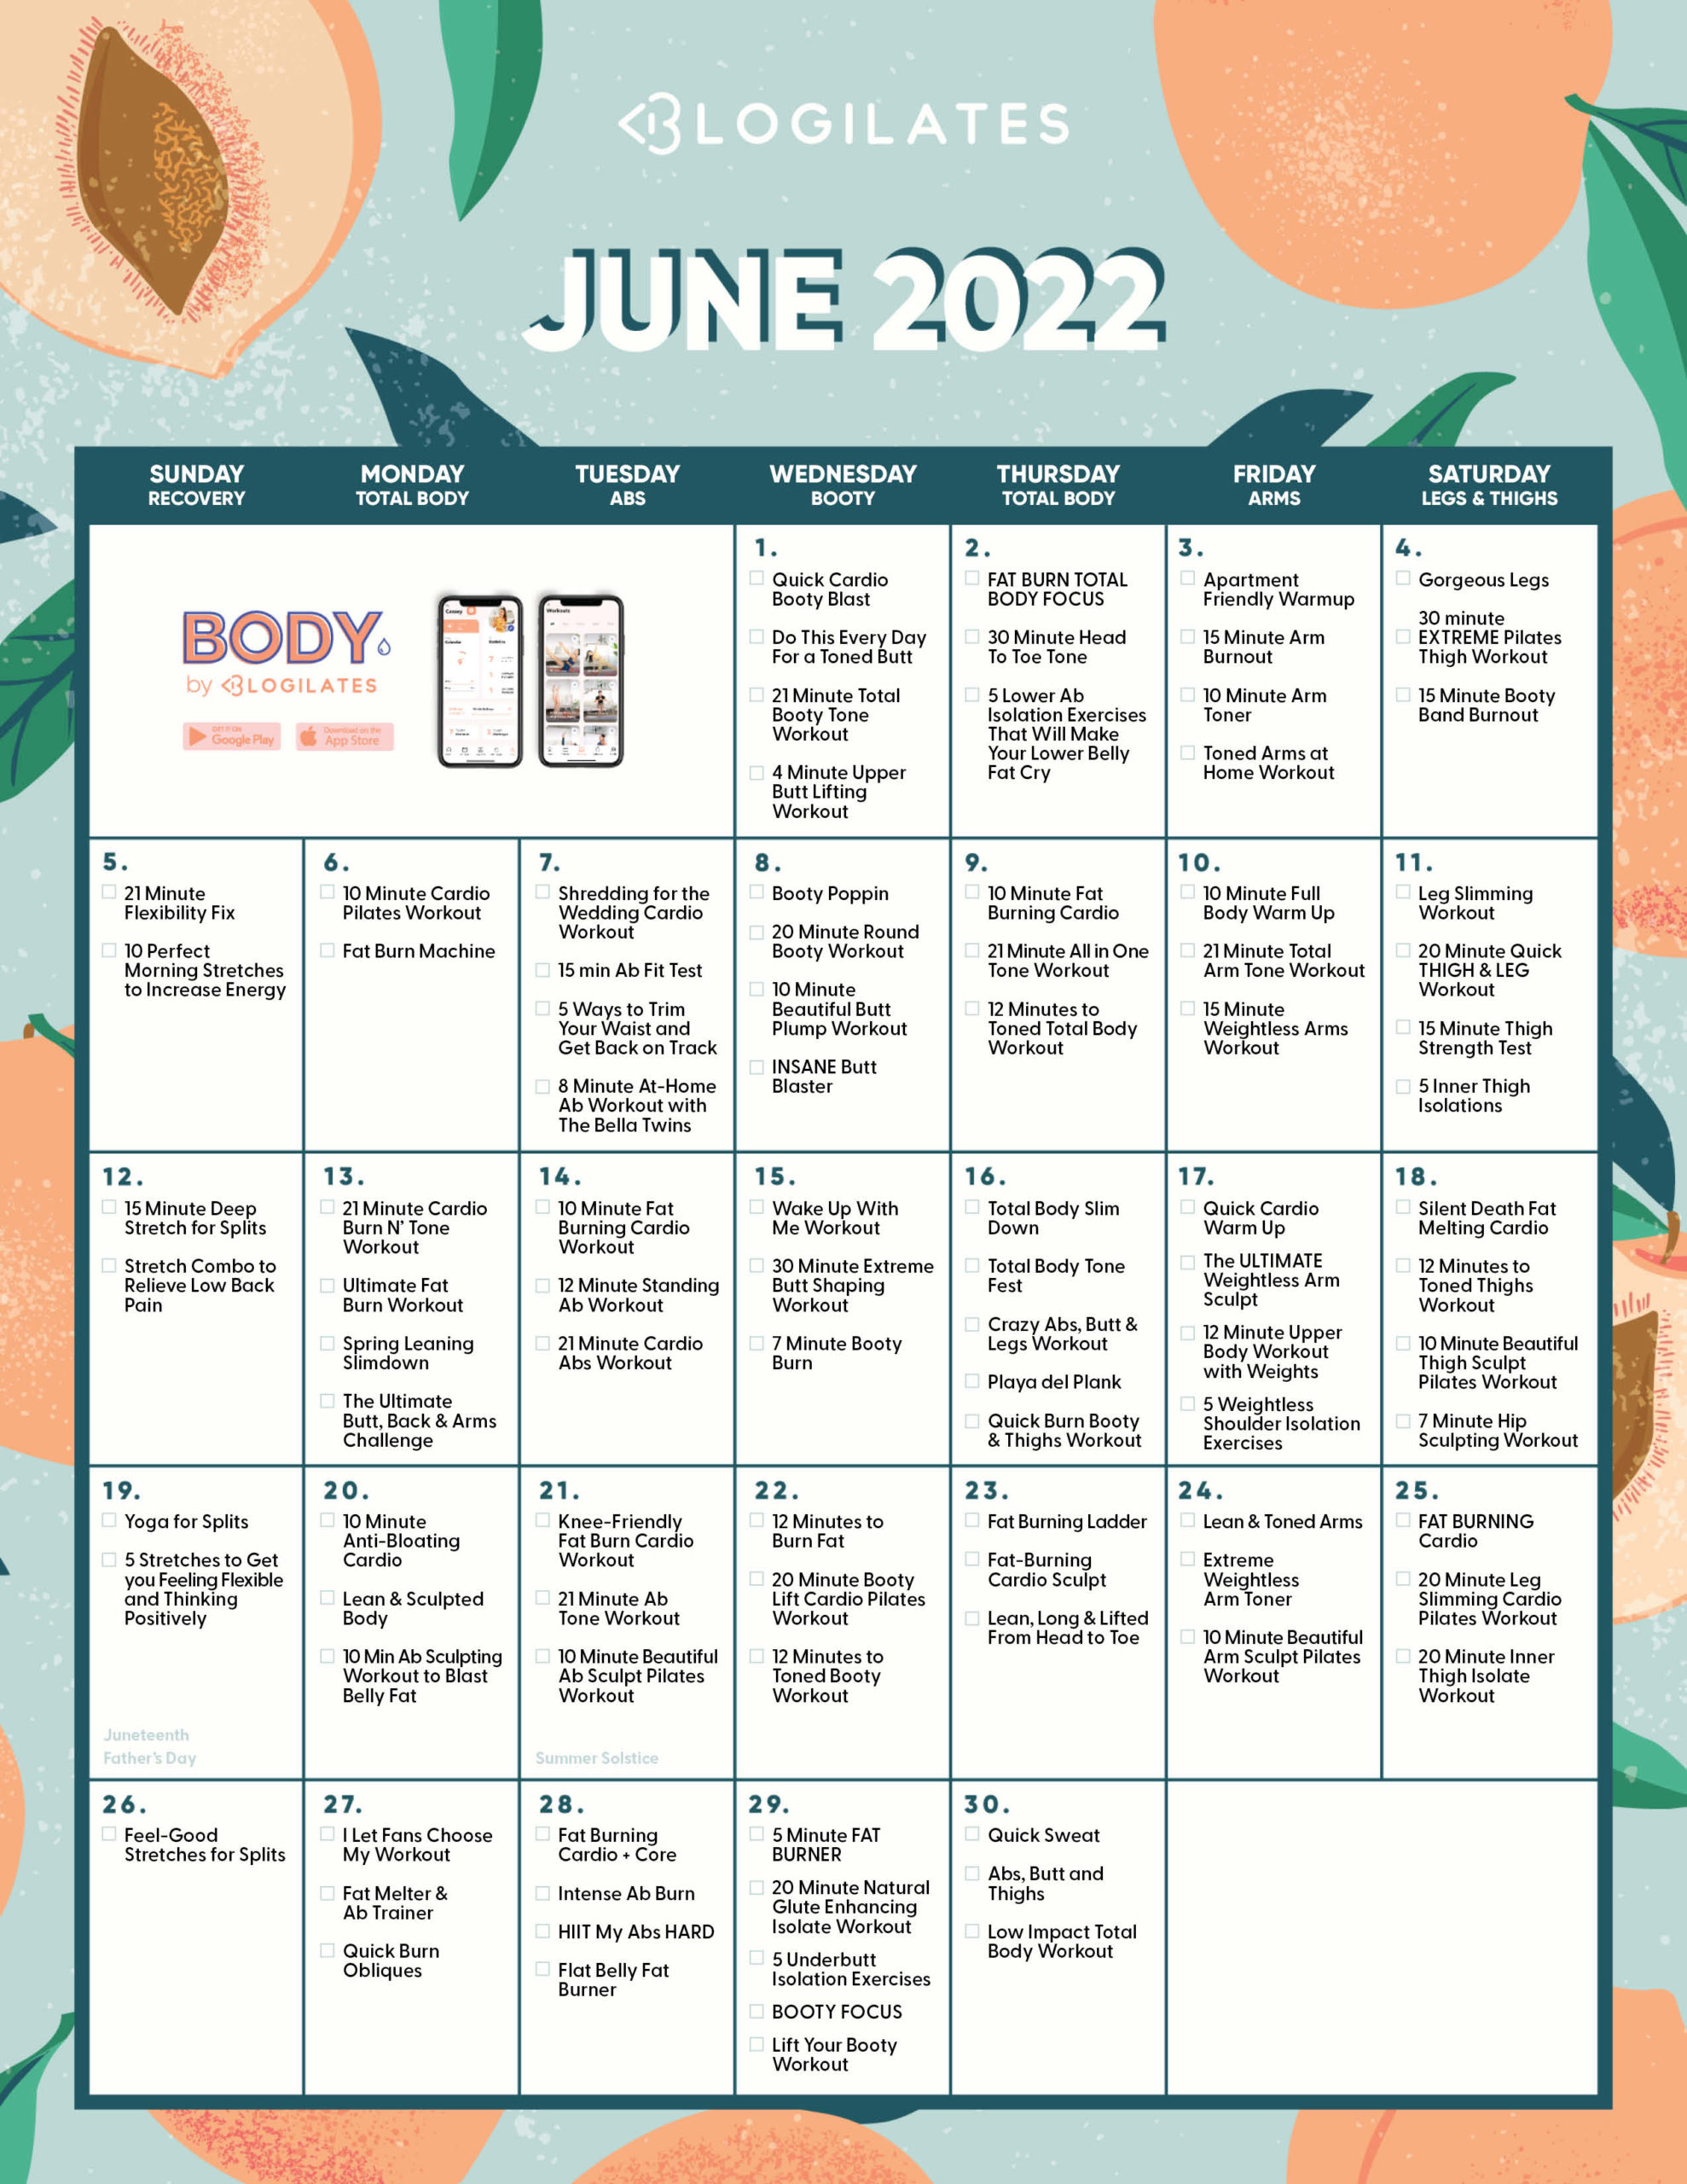 The Blogilates June 2022 Workout Calendar!